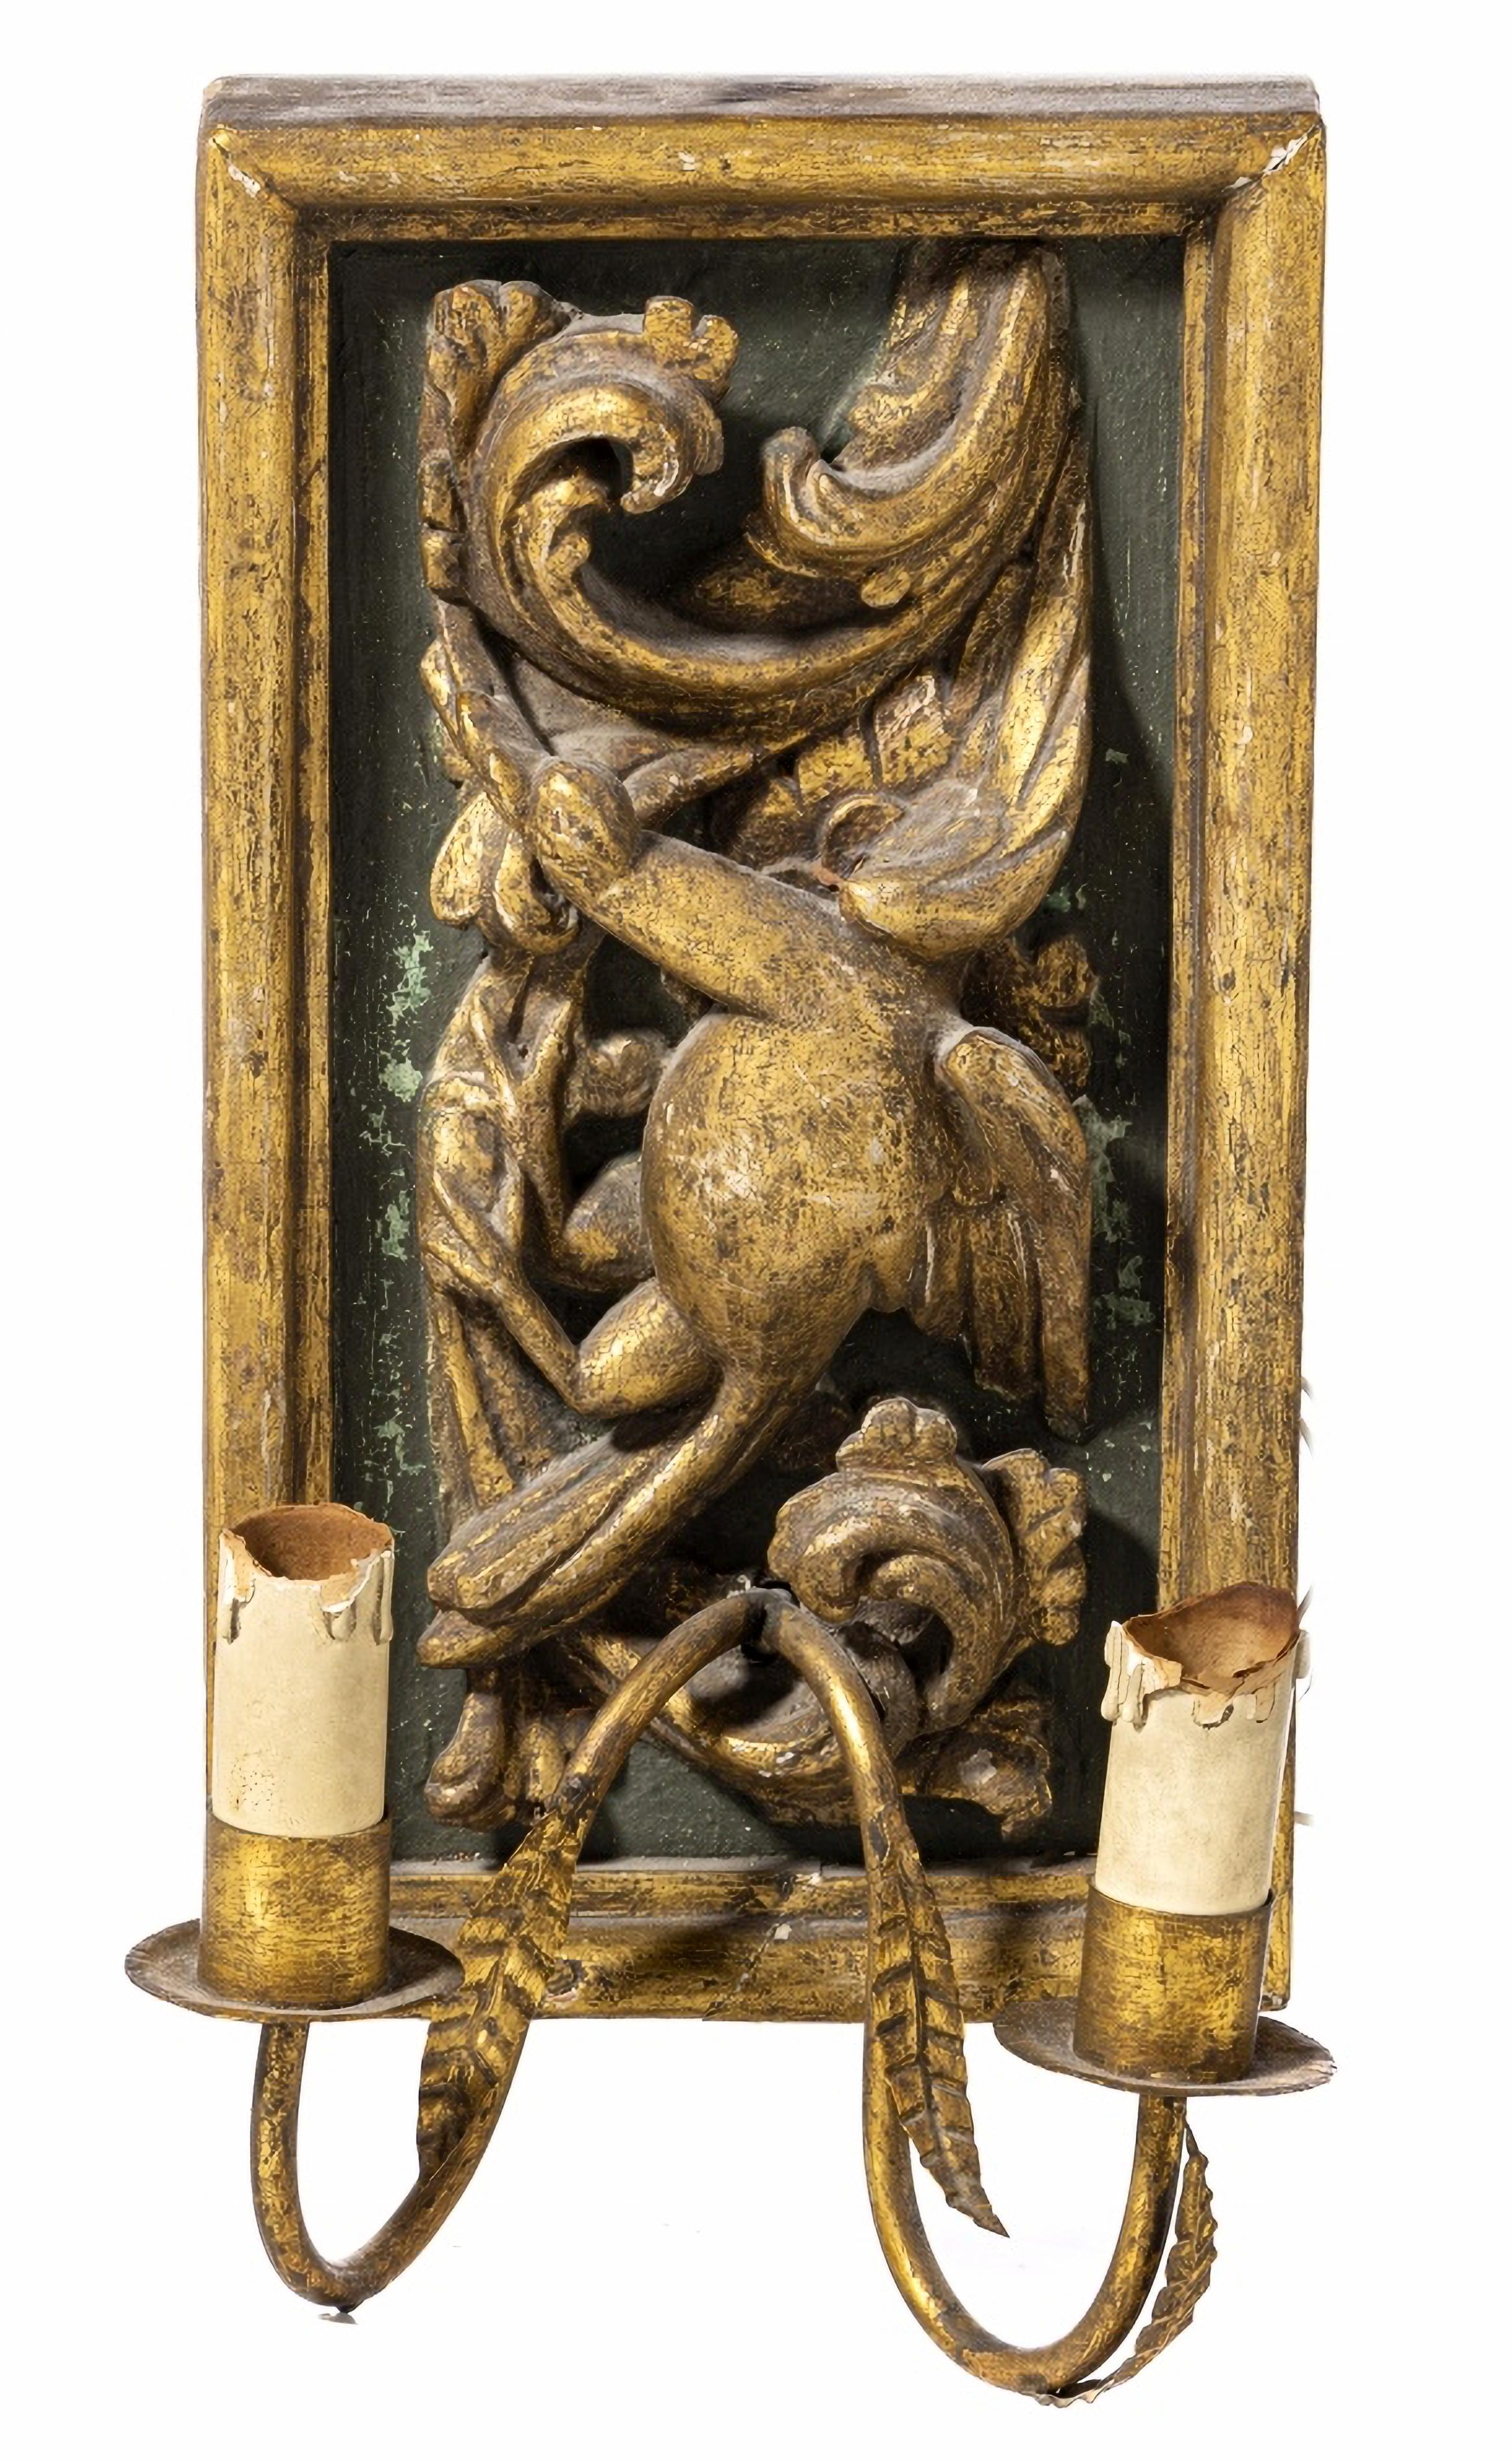 PAIRE D'APPLIQUES ITALIENNES A DEUX LAMES 18ème siècle

Italiens, sculptures dorées
avec des applications métalliques.
Petits défauts.
Dim. : 34 x 18 cm
bonnes conditions